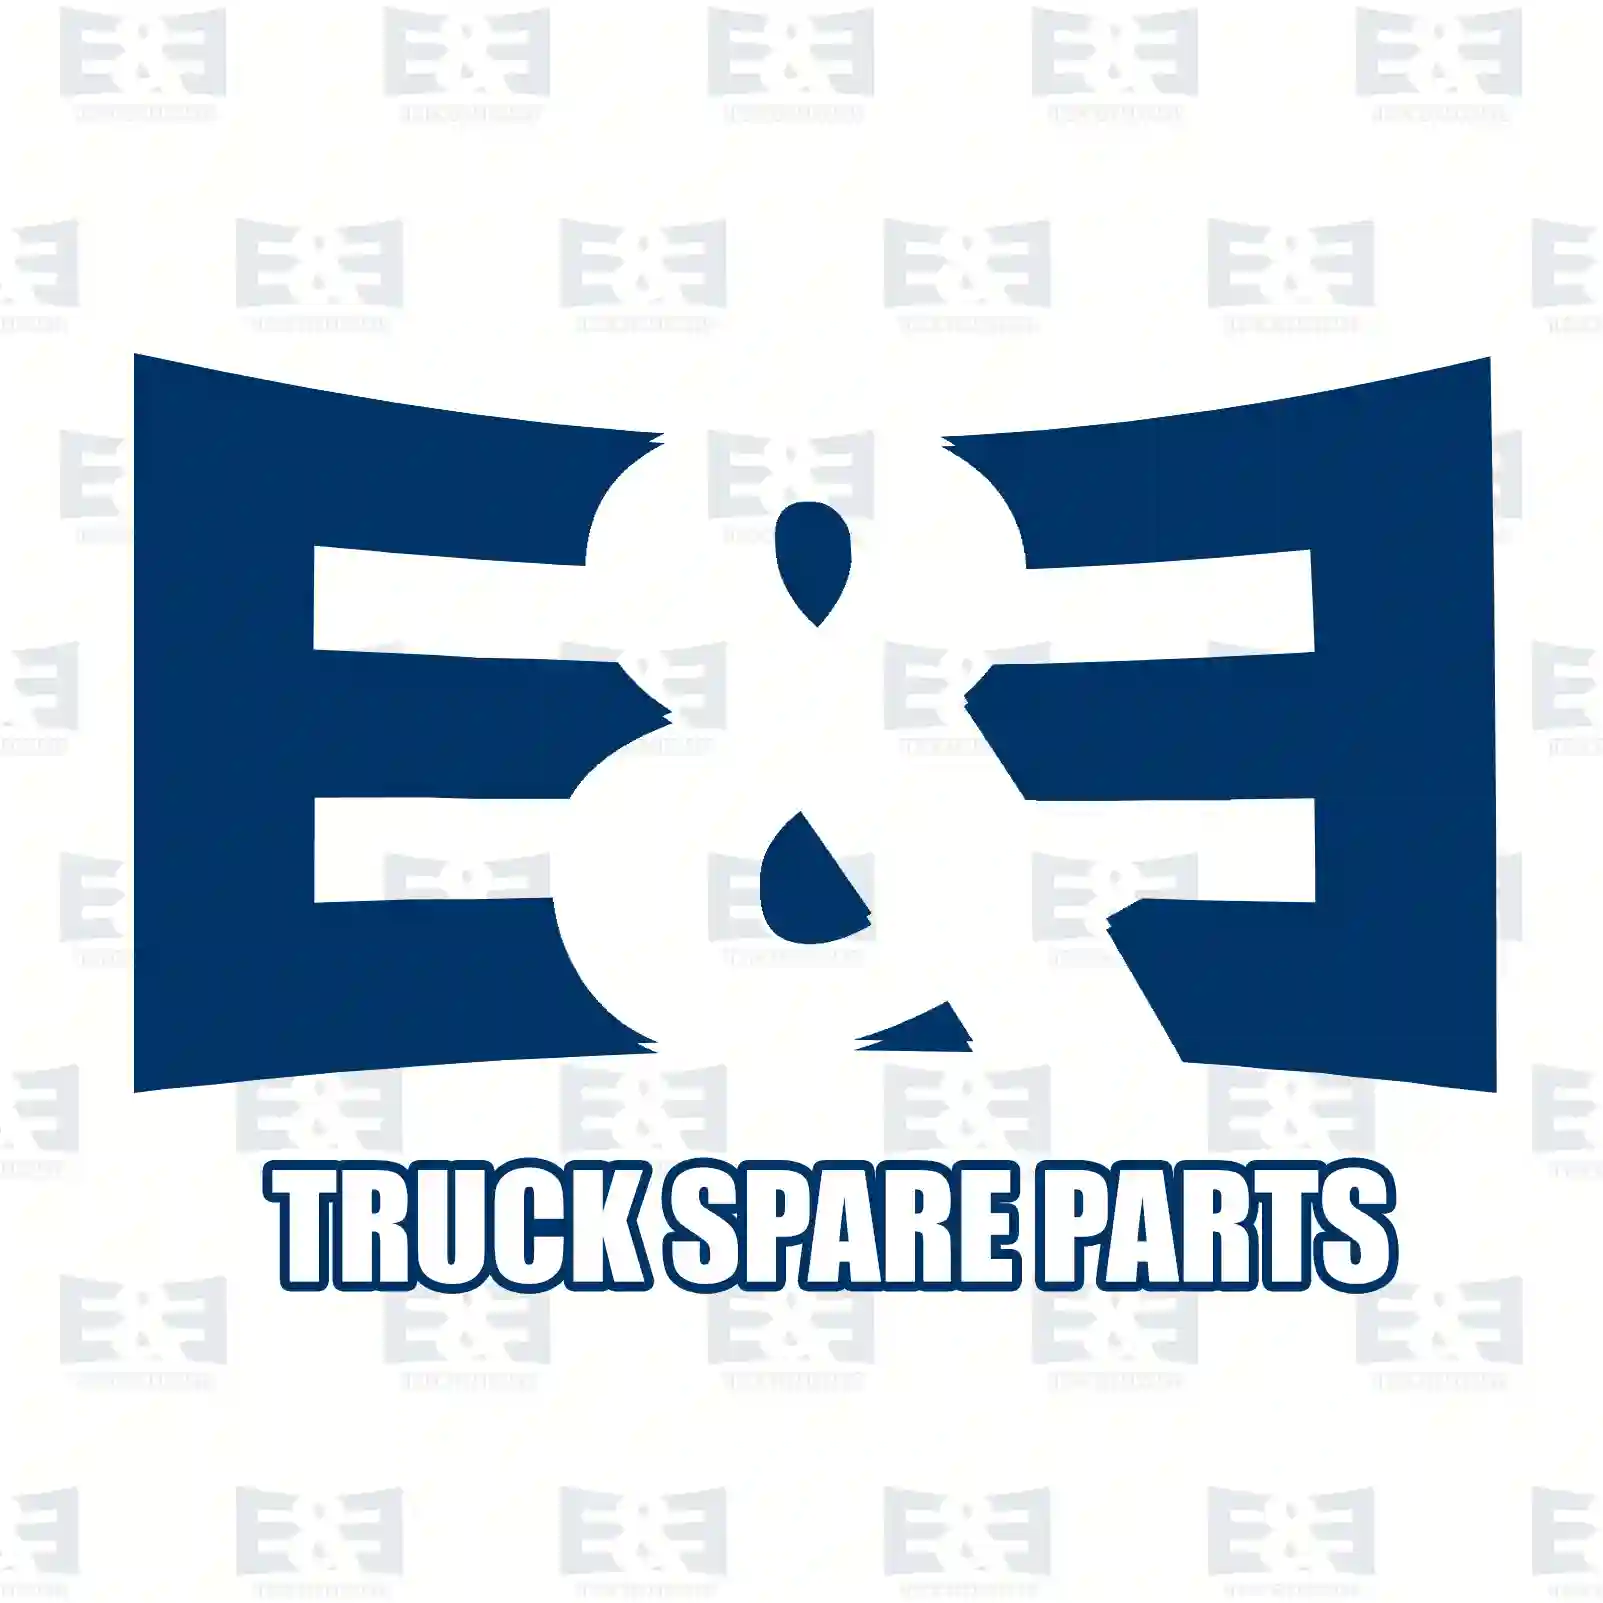 Hose nozzle, 2E2286779, 41036001 ||  2E2286779 E&E Truck Spare Parts | Truck Spare Parts, Auotomotive Spare Parts Hose nozzle, 2E2286779, 41036001 ||  2E2286779 E&E Truck Spare Parts | Truck Spare Parts, Auotomotive Spare Parts